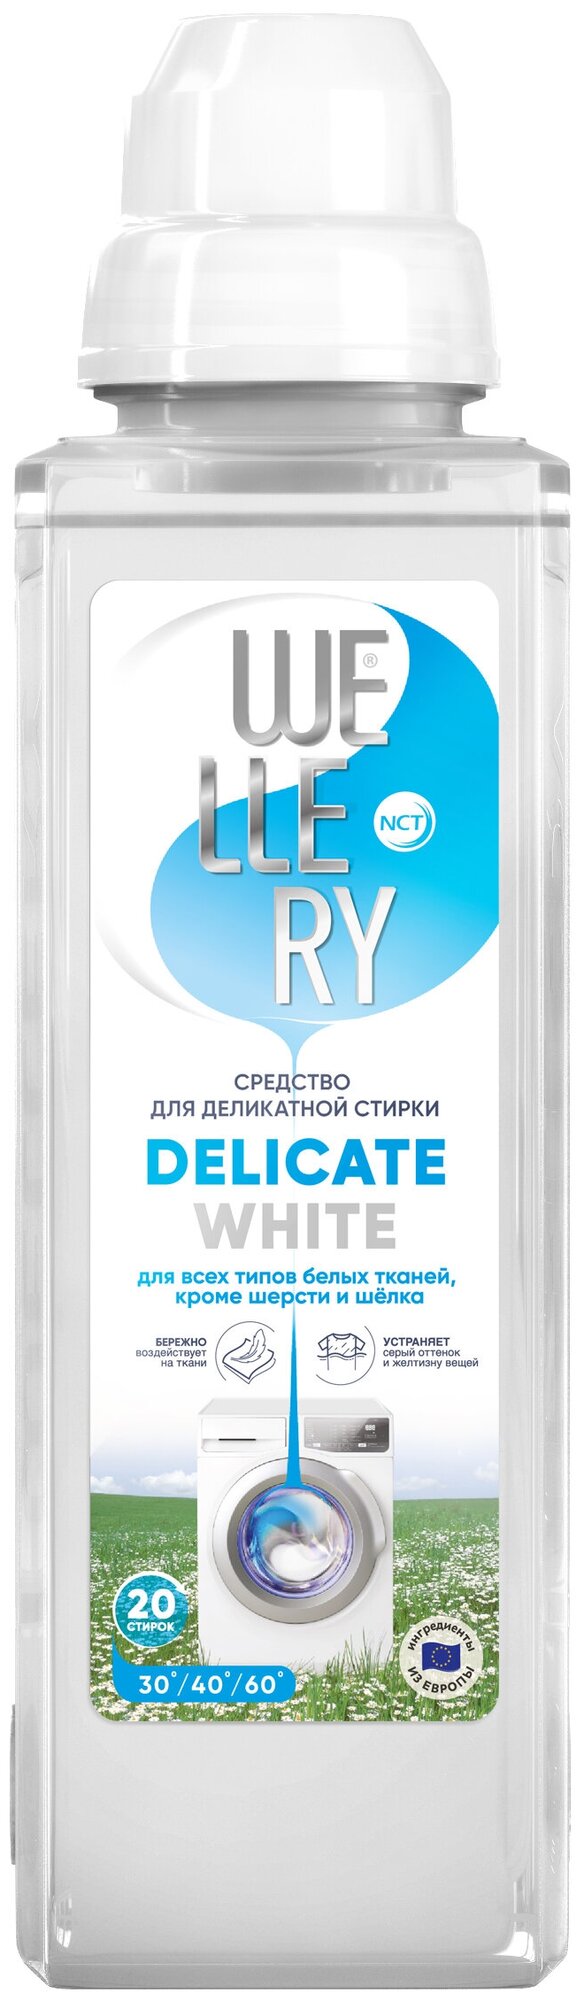 Гель для стирки Wellery Delicate white, 1 л